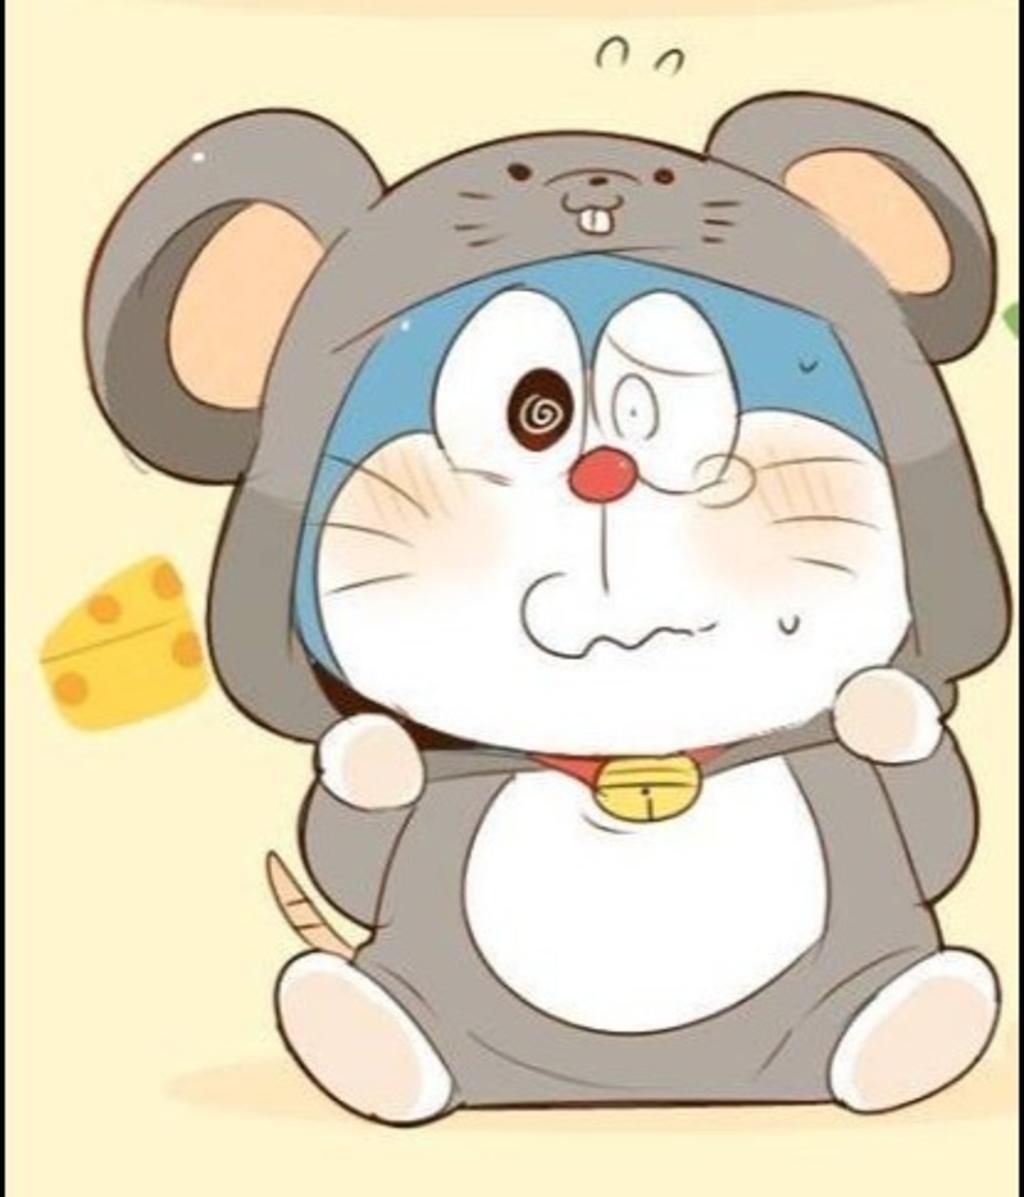 Bạn muốn vẽ Doraemon cute chibi của riêng mình? Xem những hình ảnh này để lấy cảm hứng và truyền cảm hứng! Bạn sẽ tiến bộ nhanh chóng trong việc vẽ Doraemon đáng yêu.